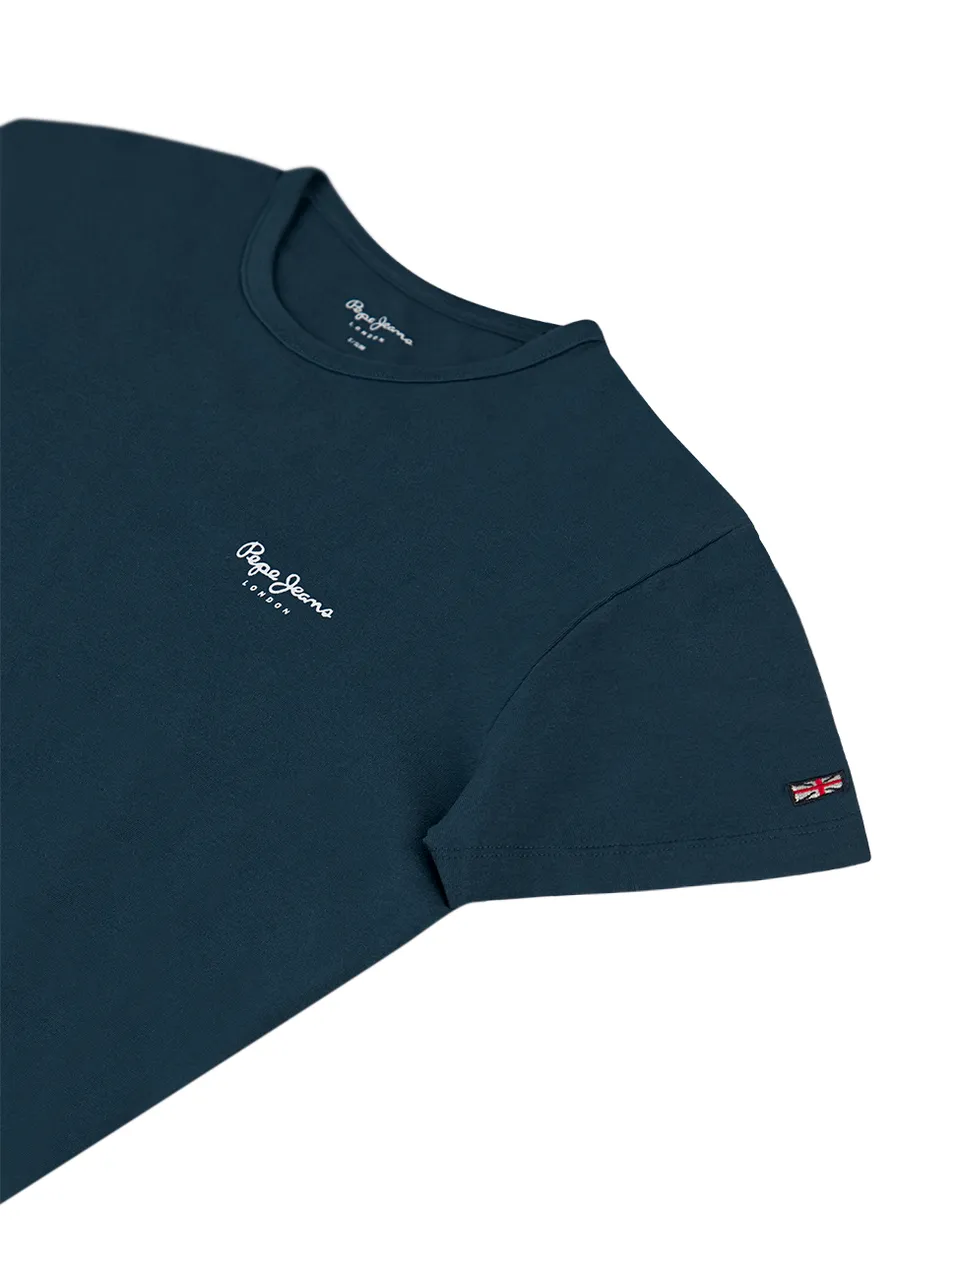 Pepe Jeans Herren T-Shirt ORIGINAL BASIC 3- Slim Fit